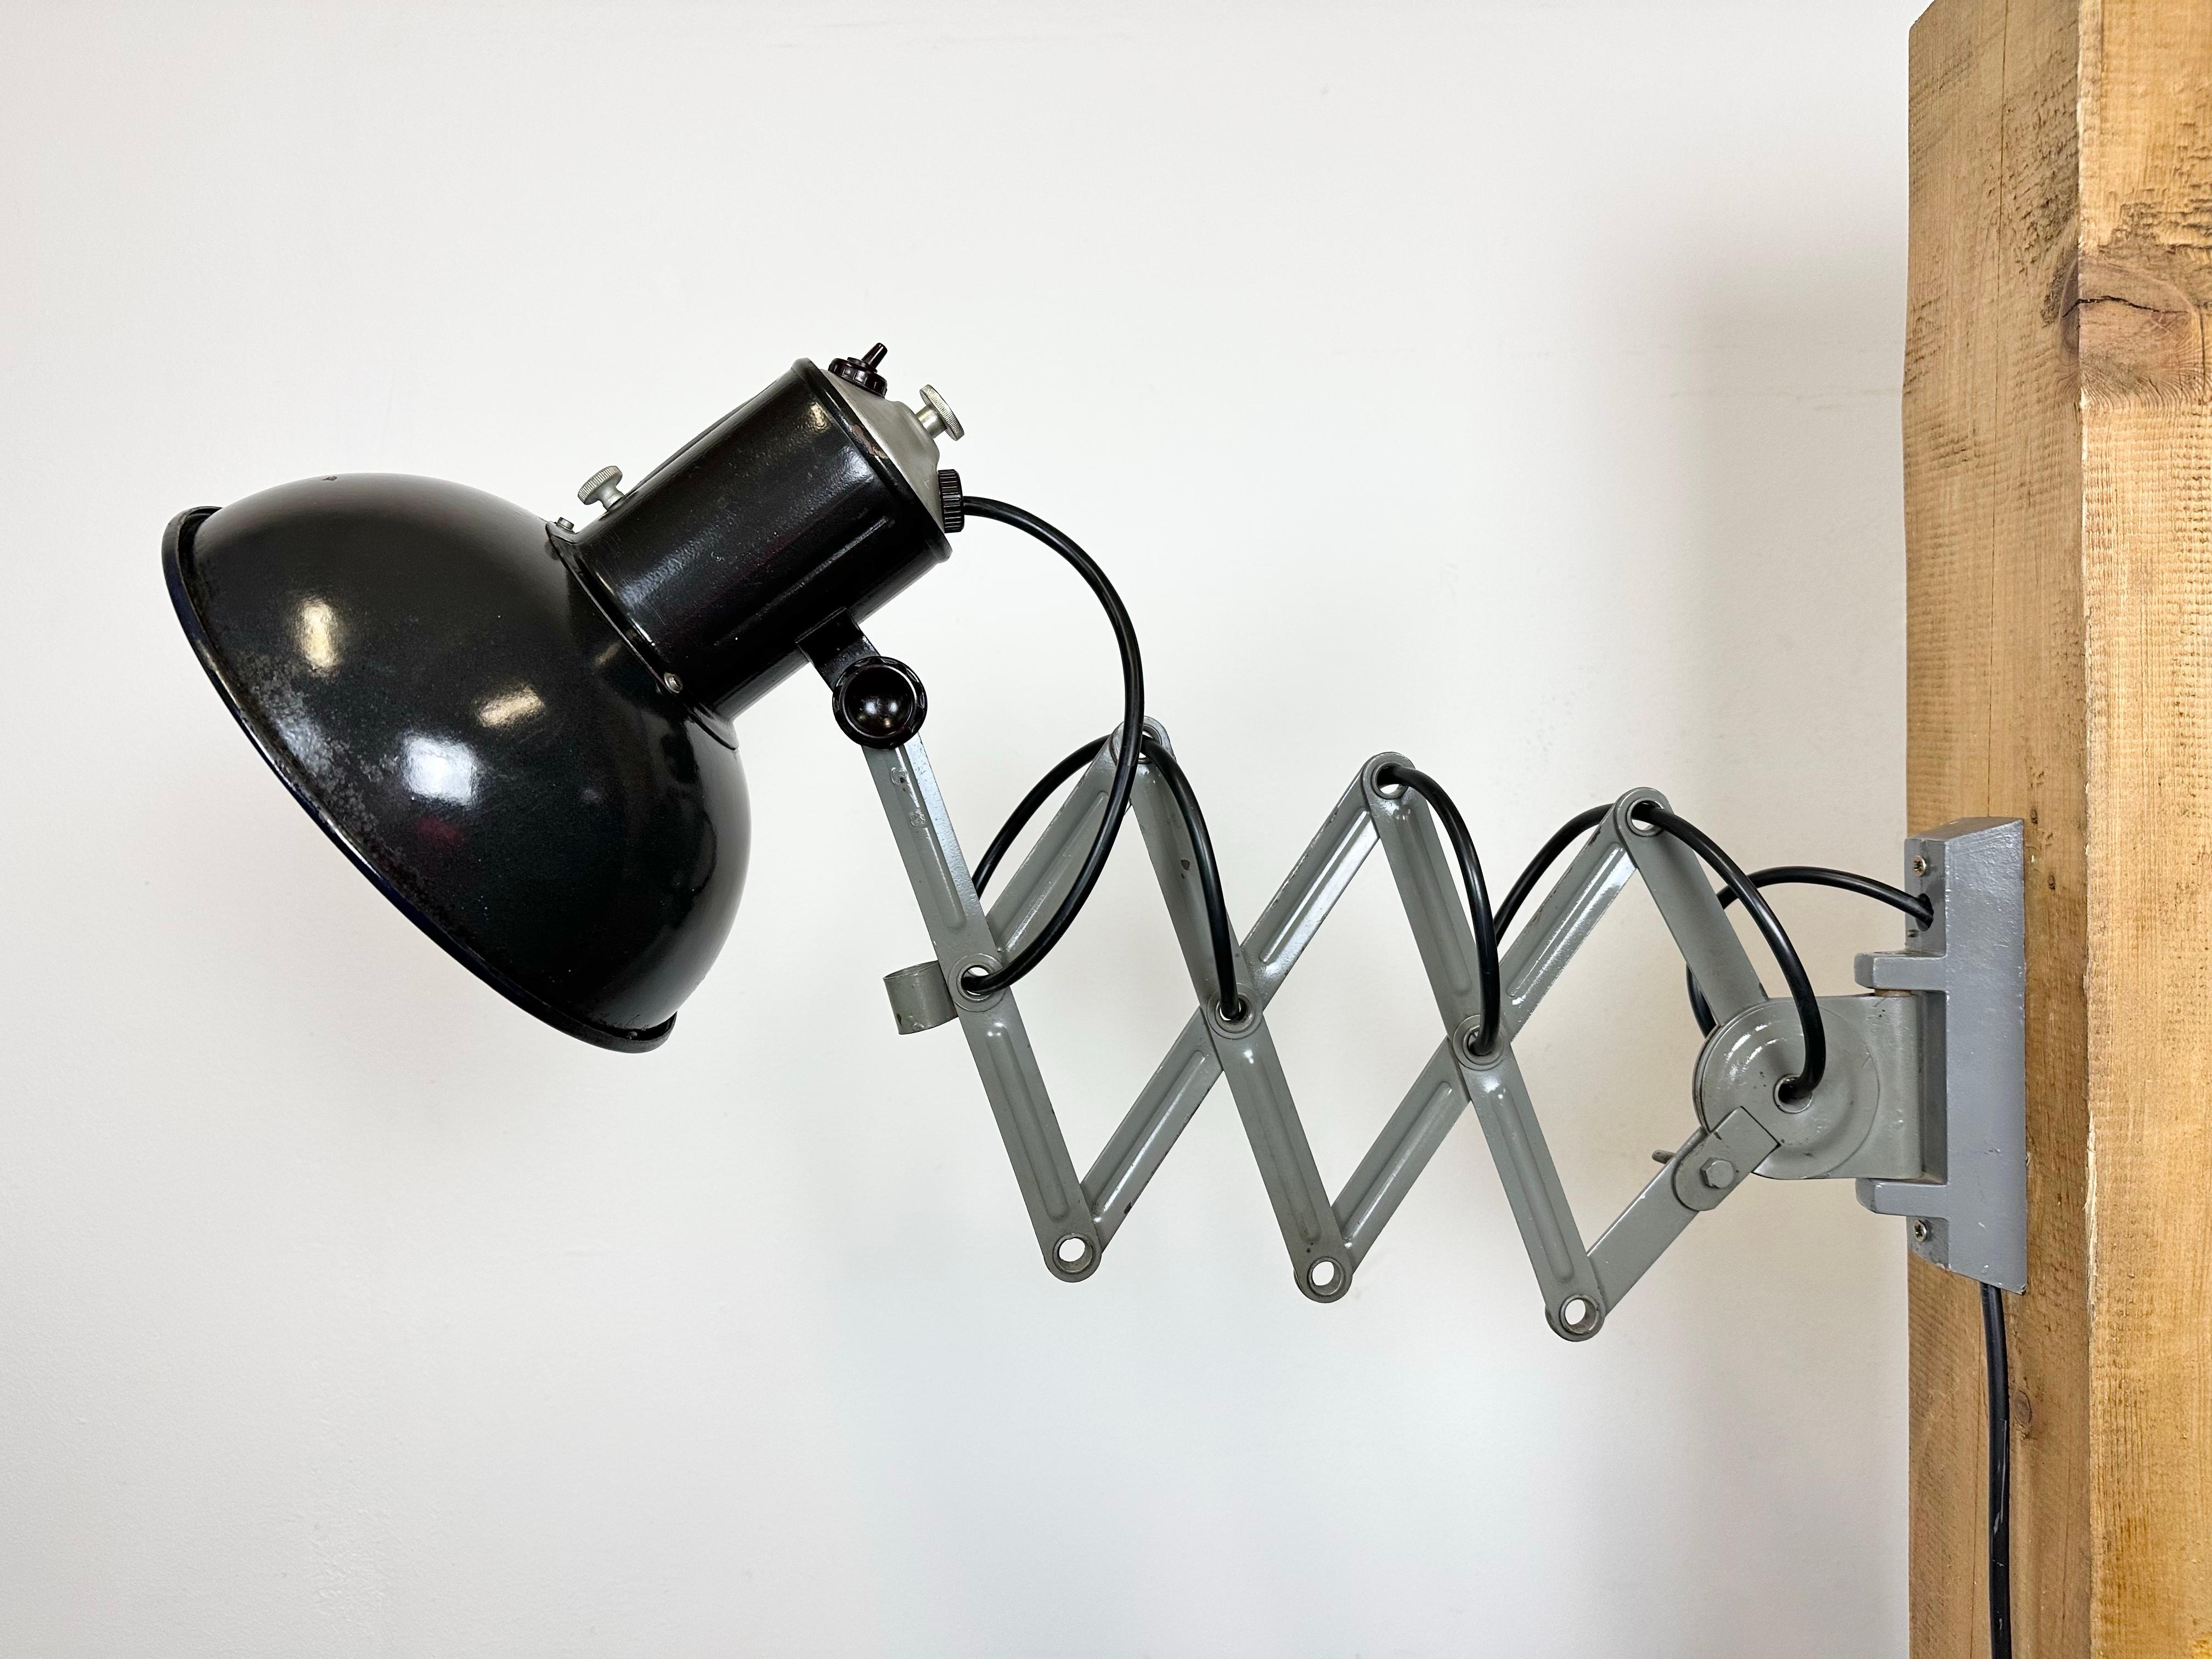 Diese Vintage-Industrie-Scherenlampe wurde in den 1950er Jahren in der ehemaligen Tschechoslowakei hergestellt. Die Lampe hat einen schwarz emaillierten Metallschirm mit weißem Emaille-Innenleben. Der Grauguss-Scherenarm ist ausziehbar und kann zur